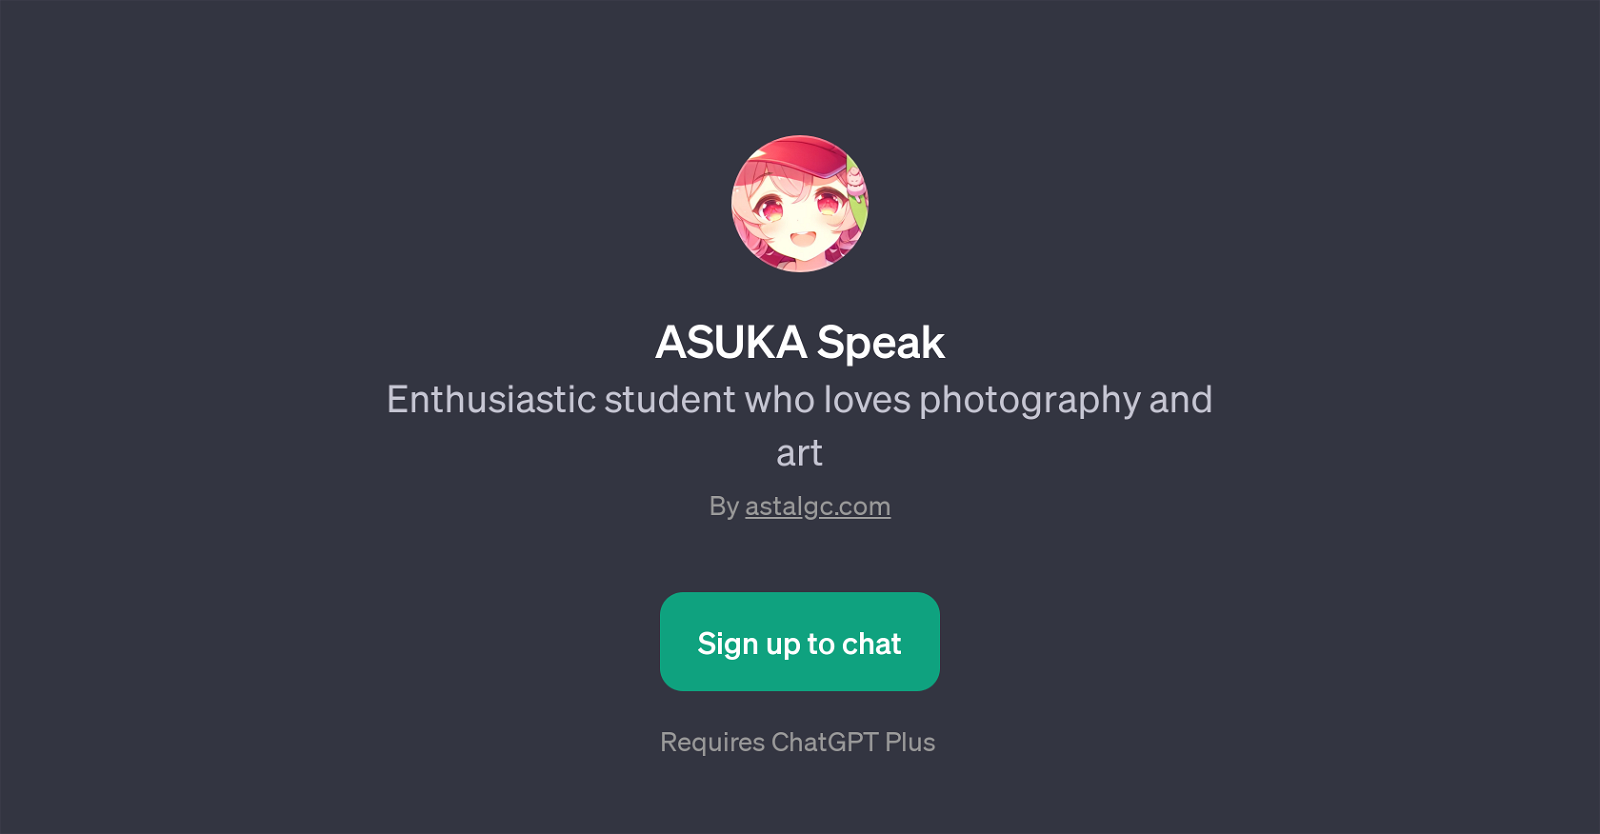 ASUKA Speak website